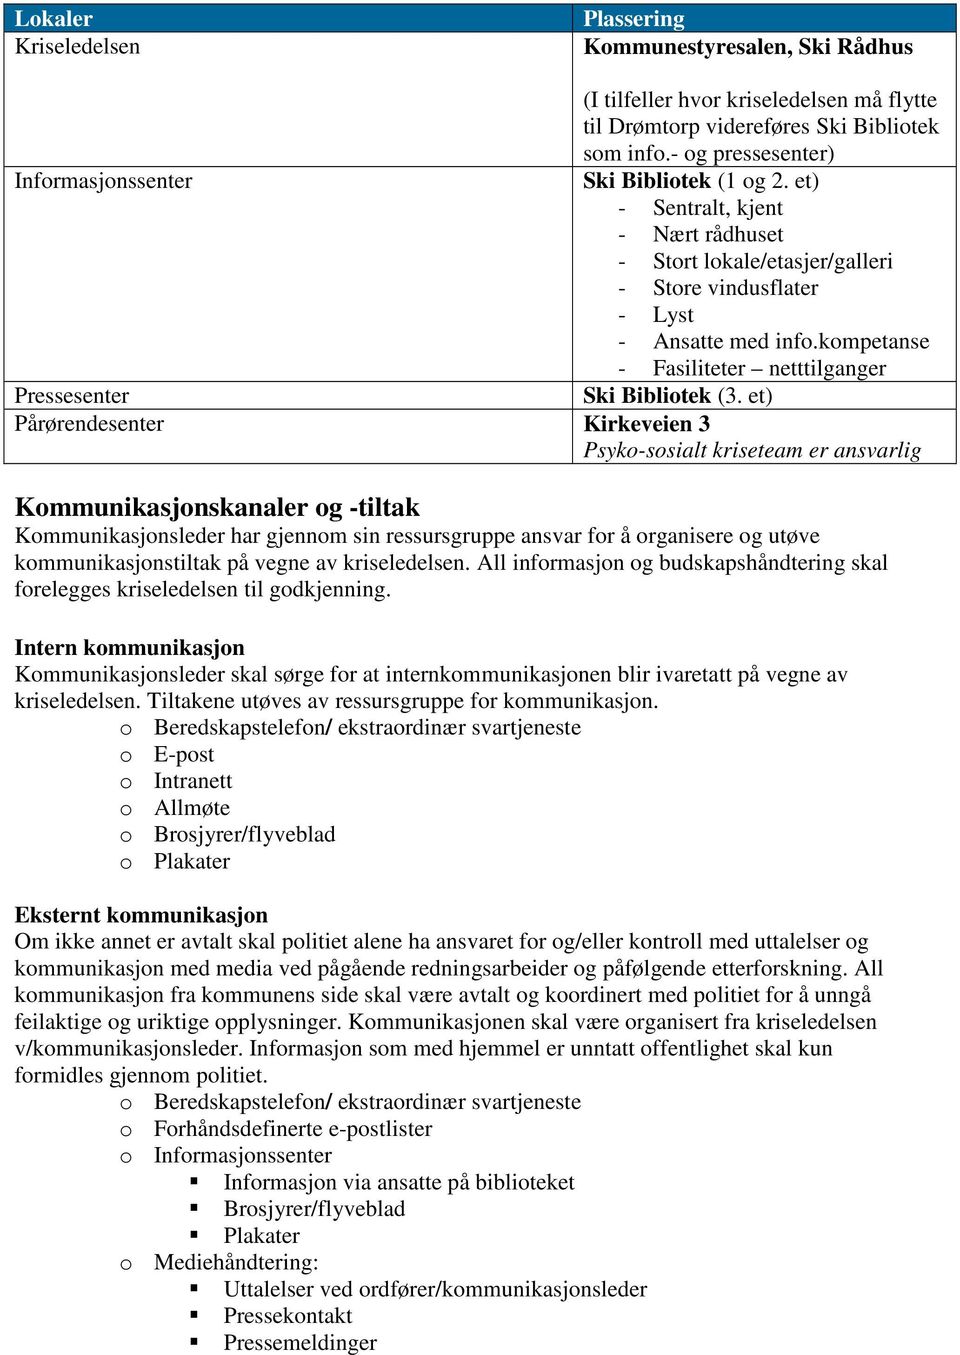 kompetanse - Fasiliteter netttilganger Pressesenter Ski Bibliotek (3.